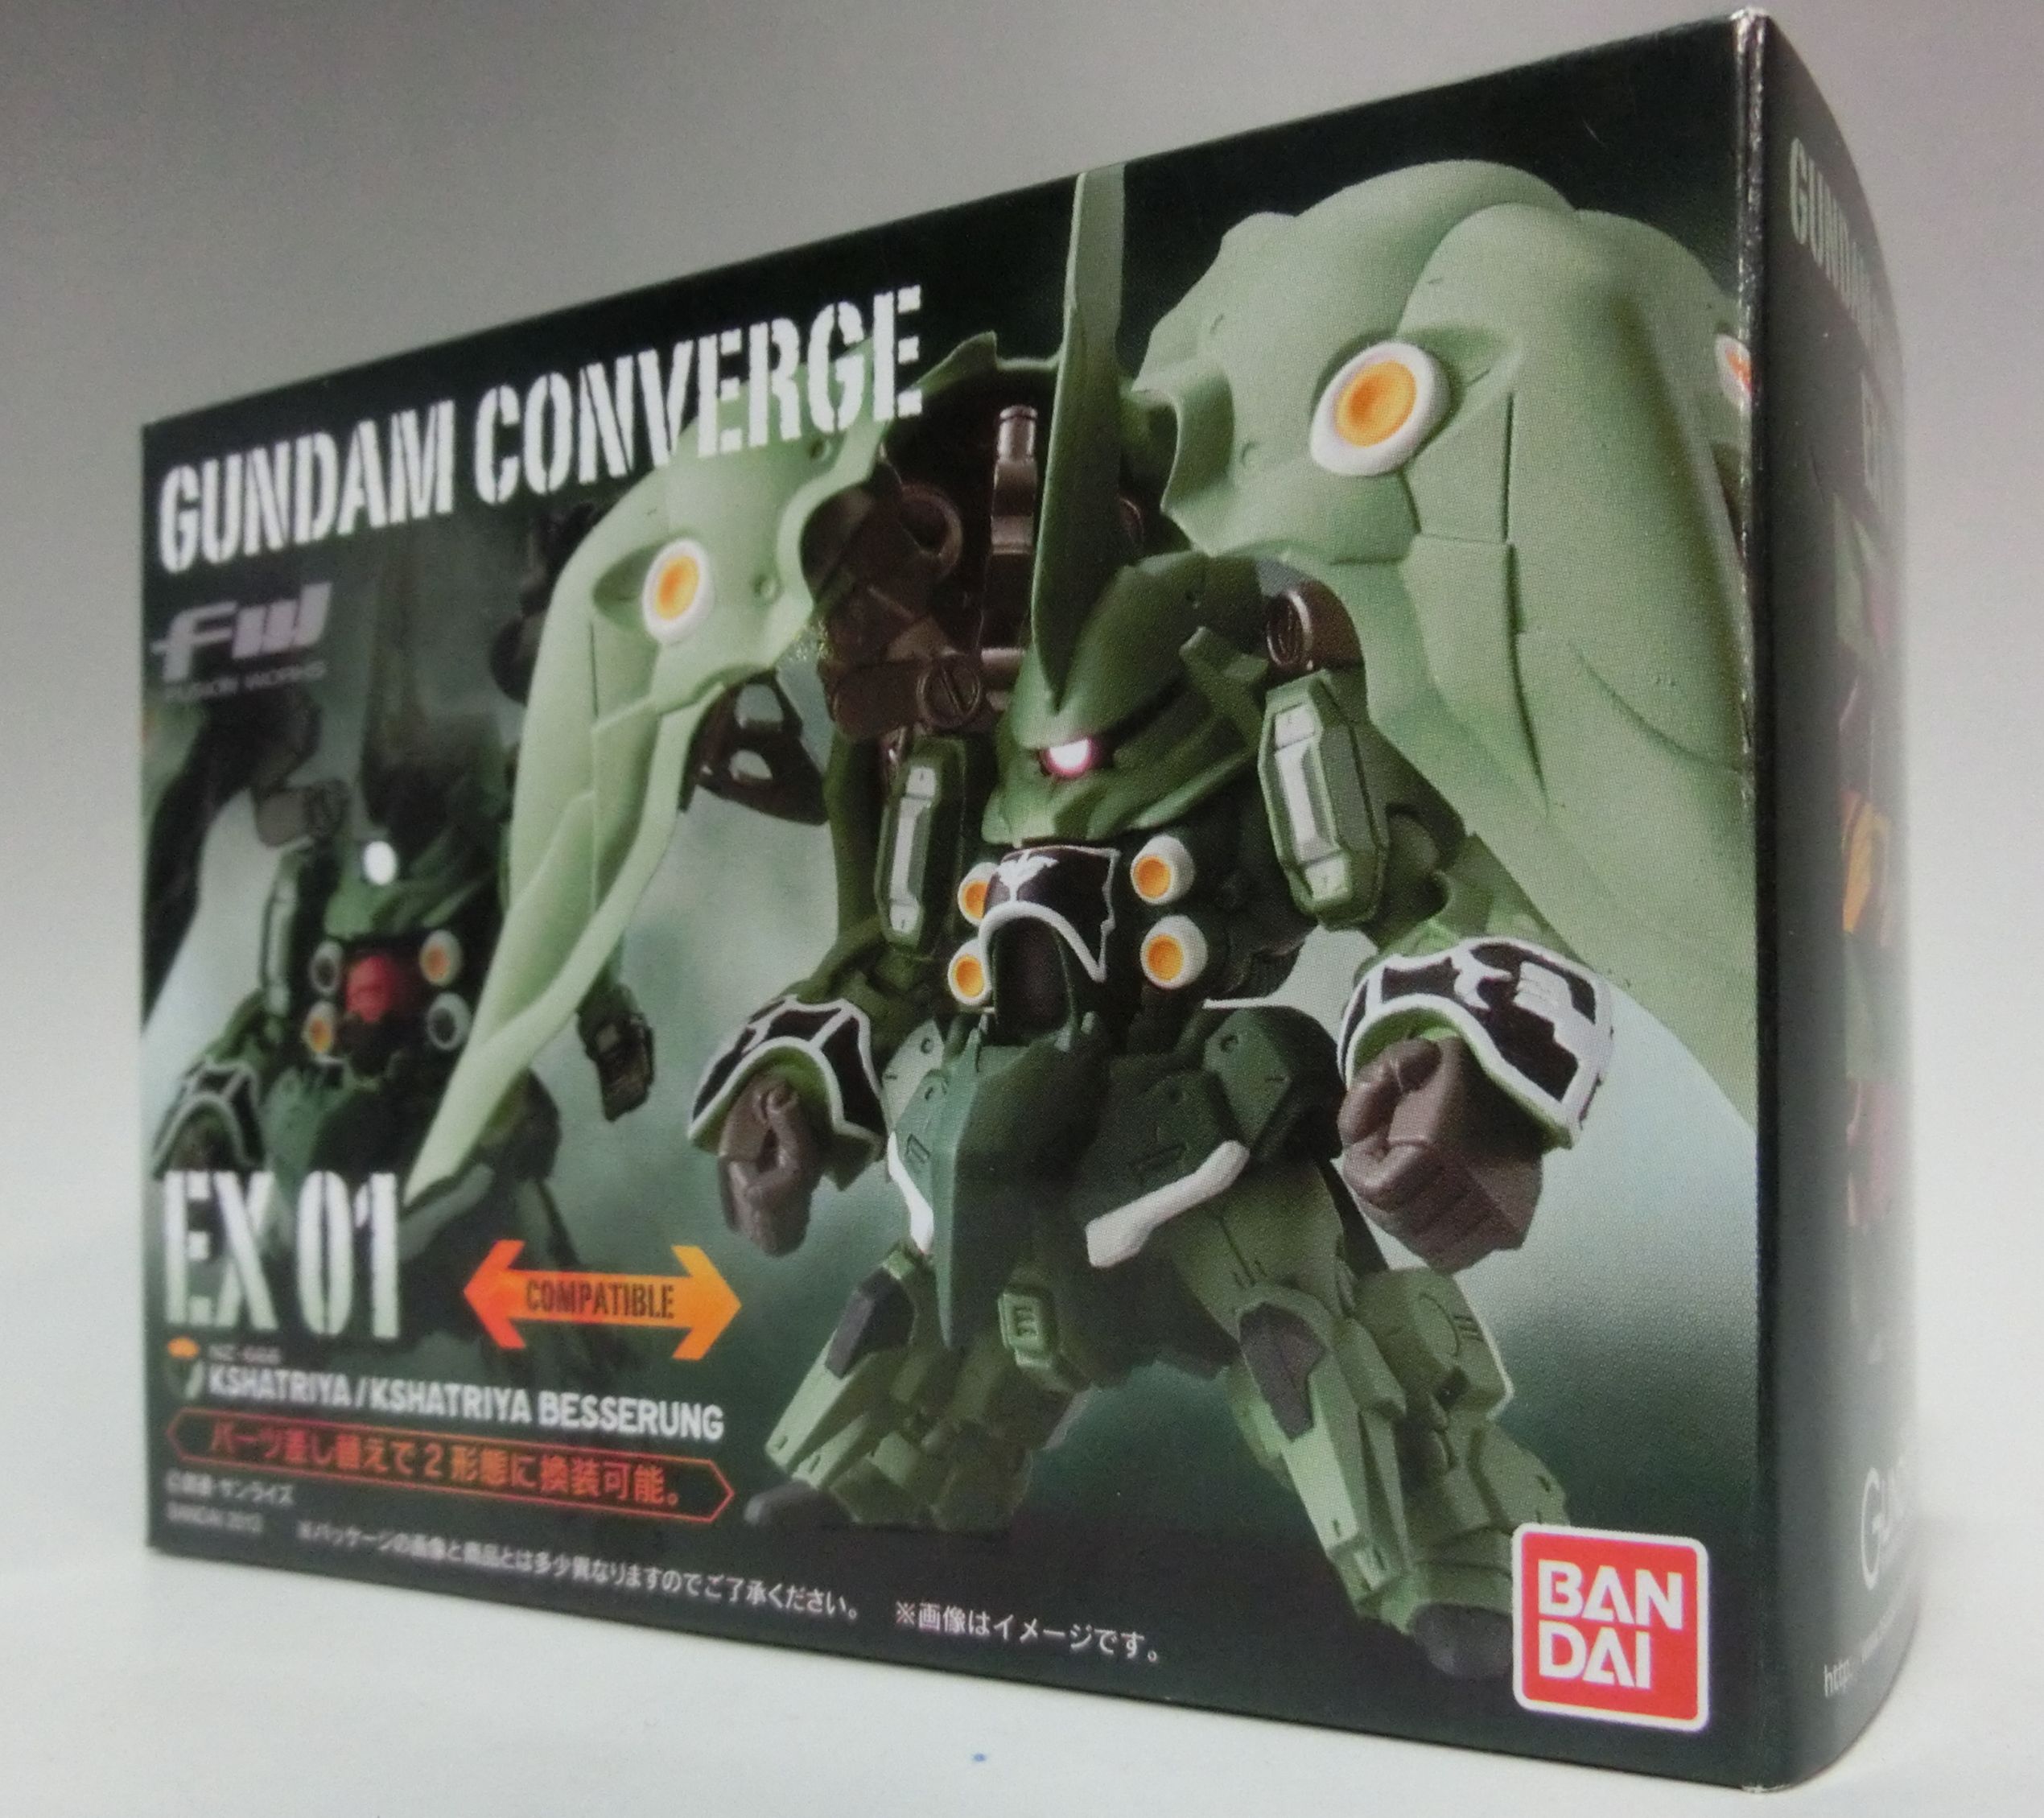 FW Gundam Converge EX01 Kshatriya